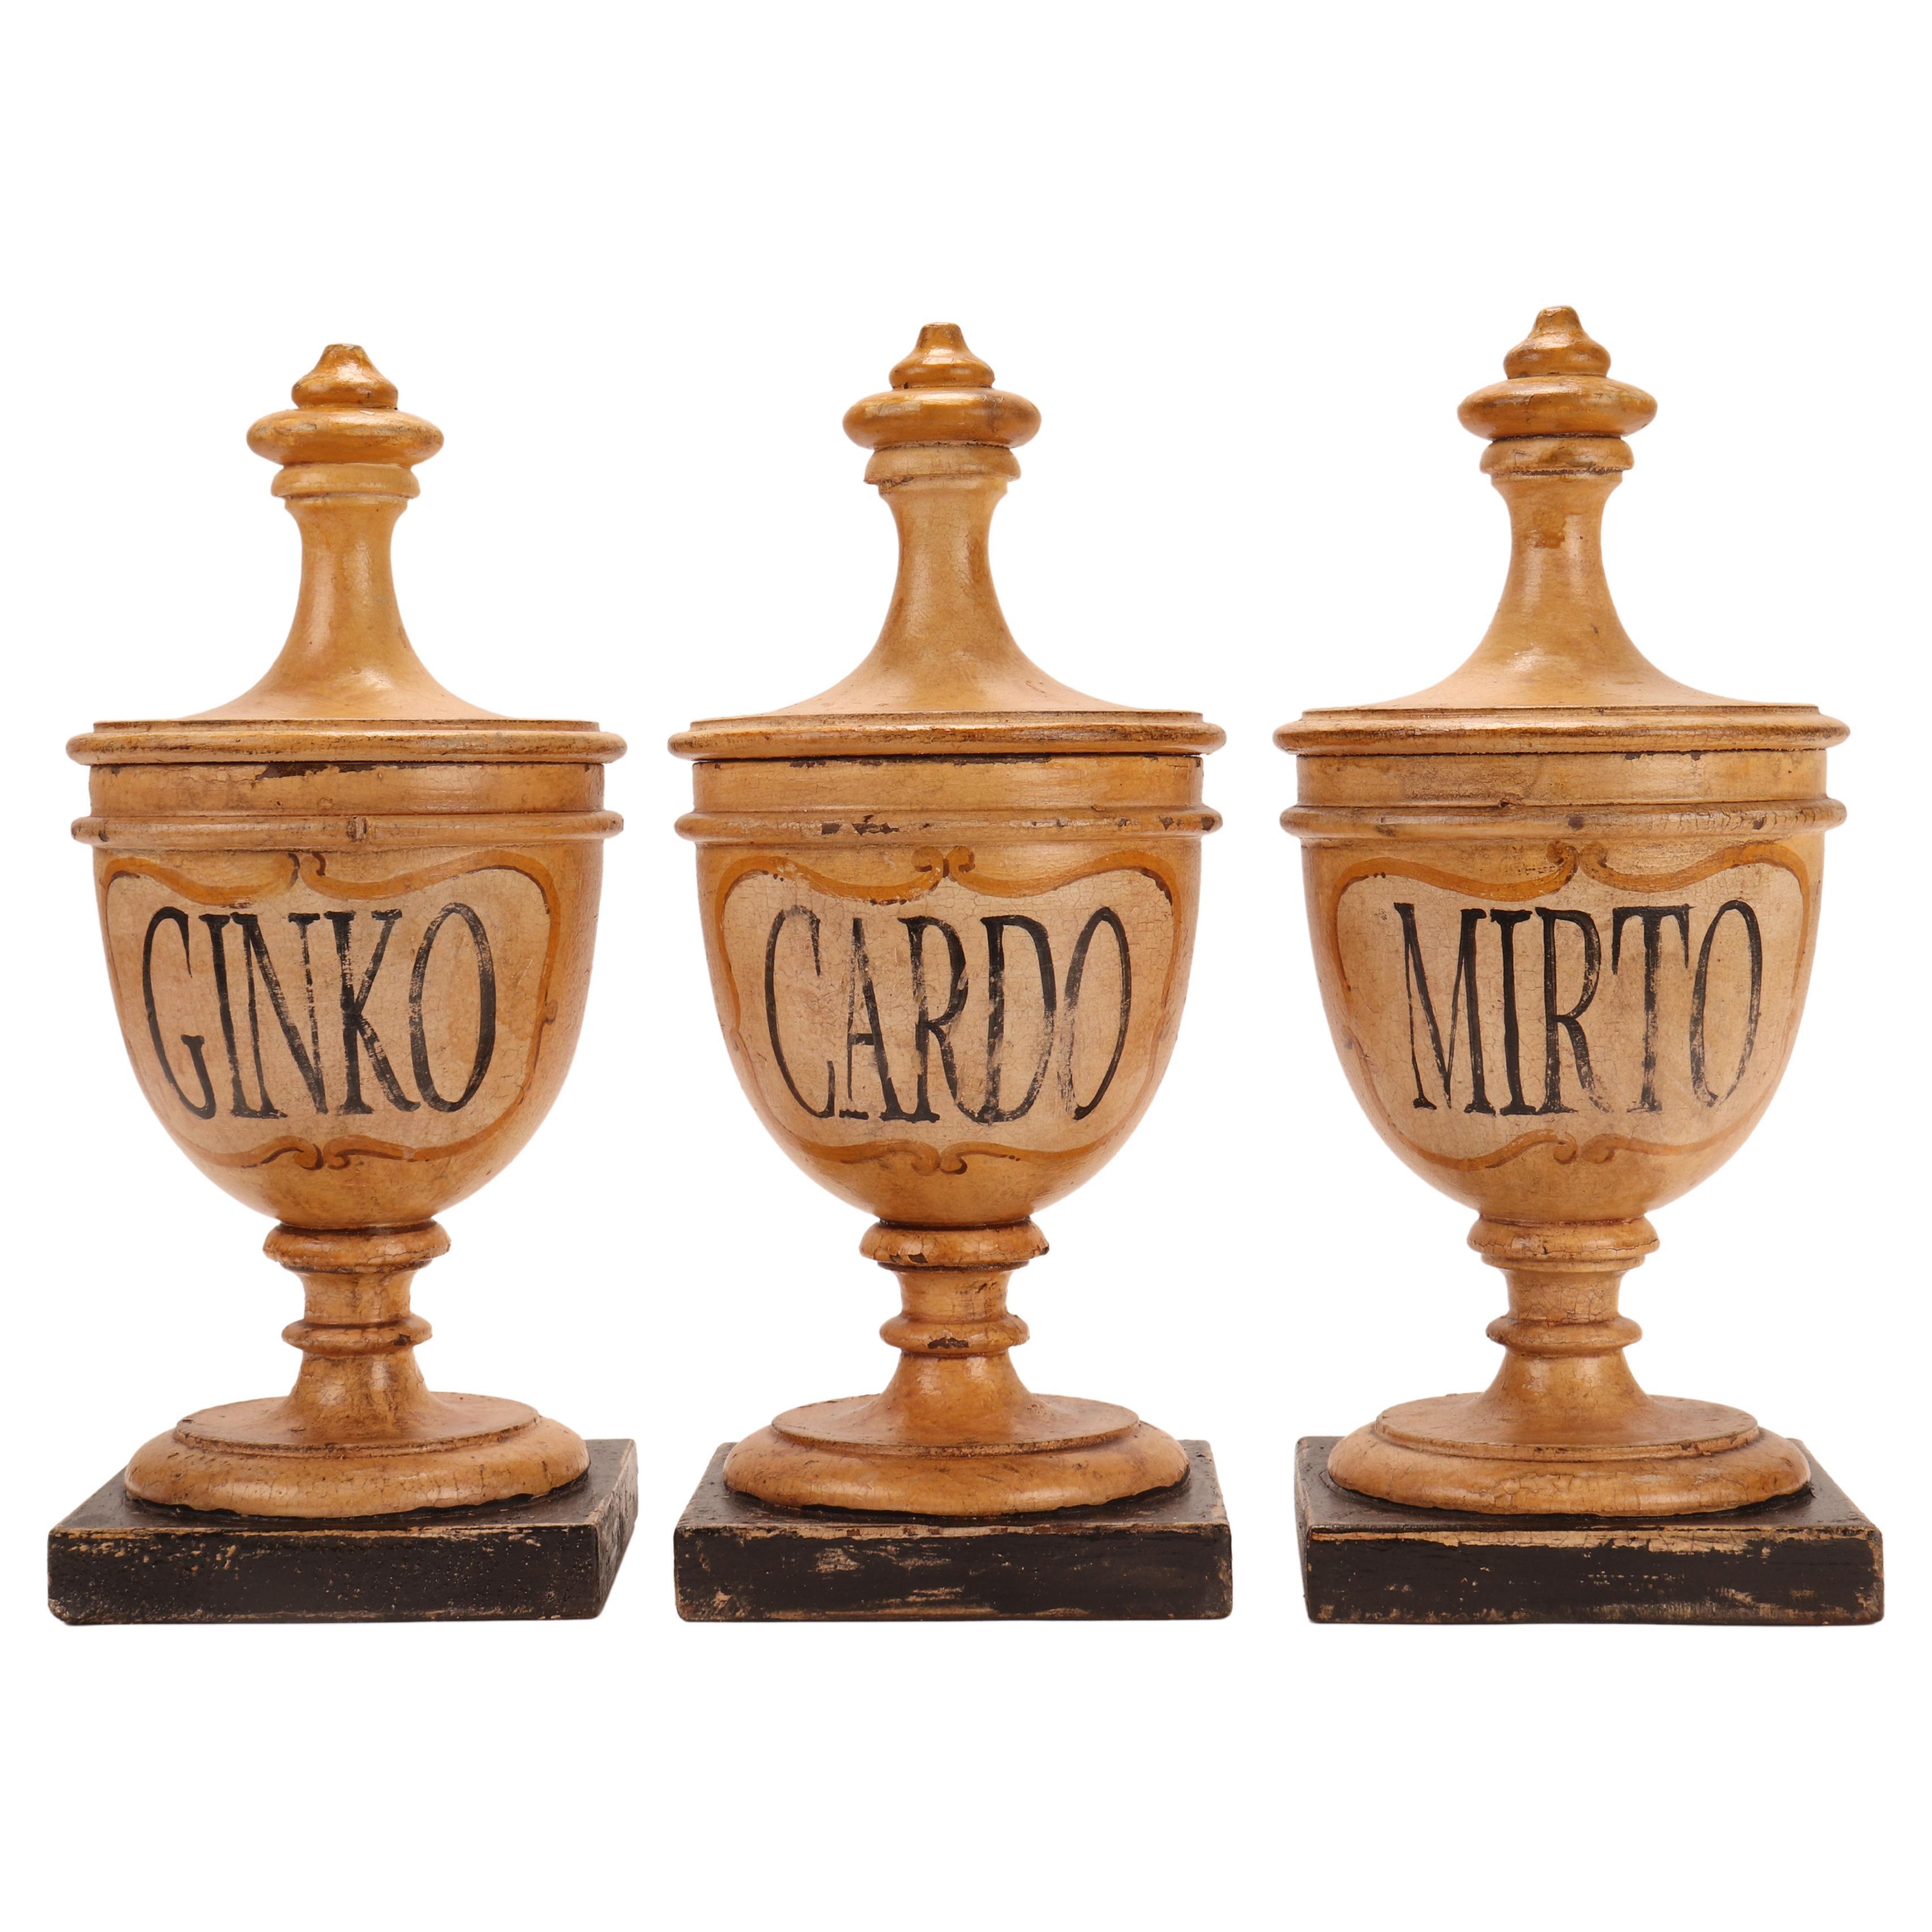 Herbalistische Apotheker-Holzgefäße aus Holz, Italien 1870